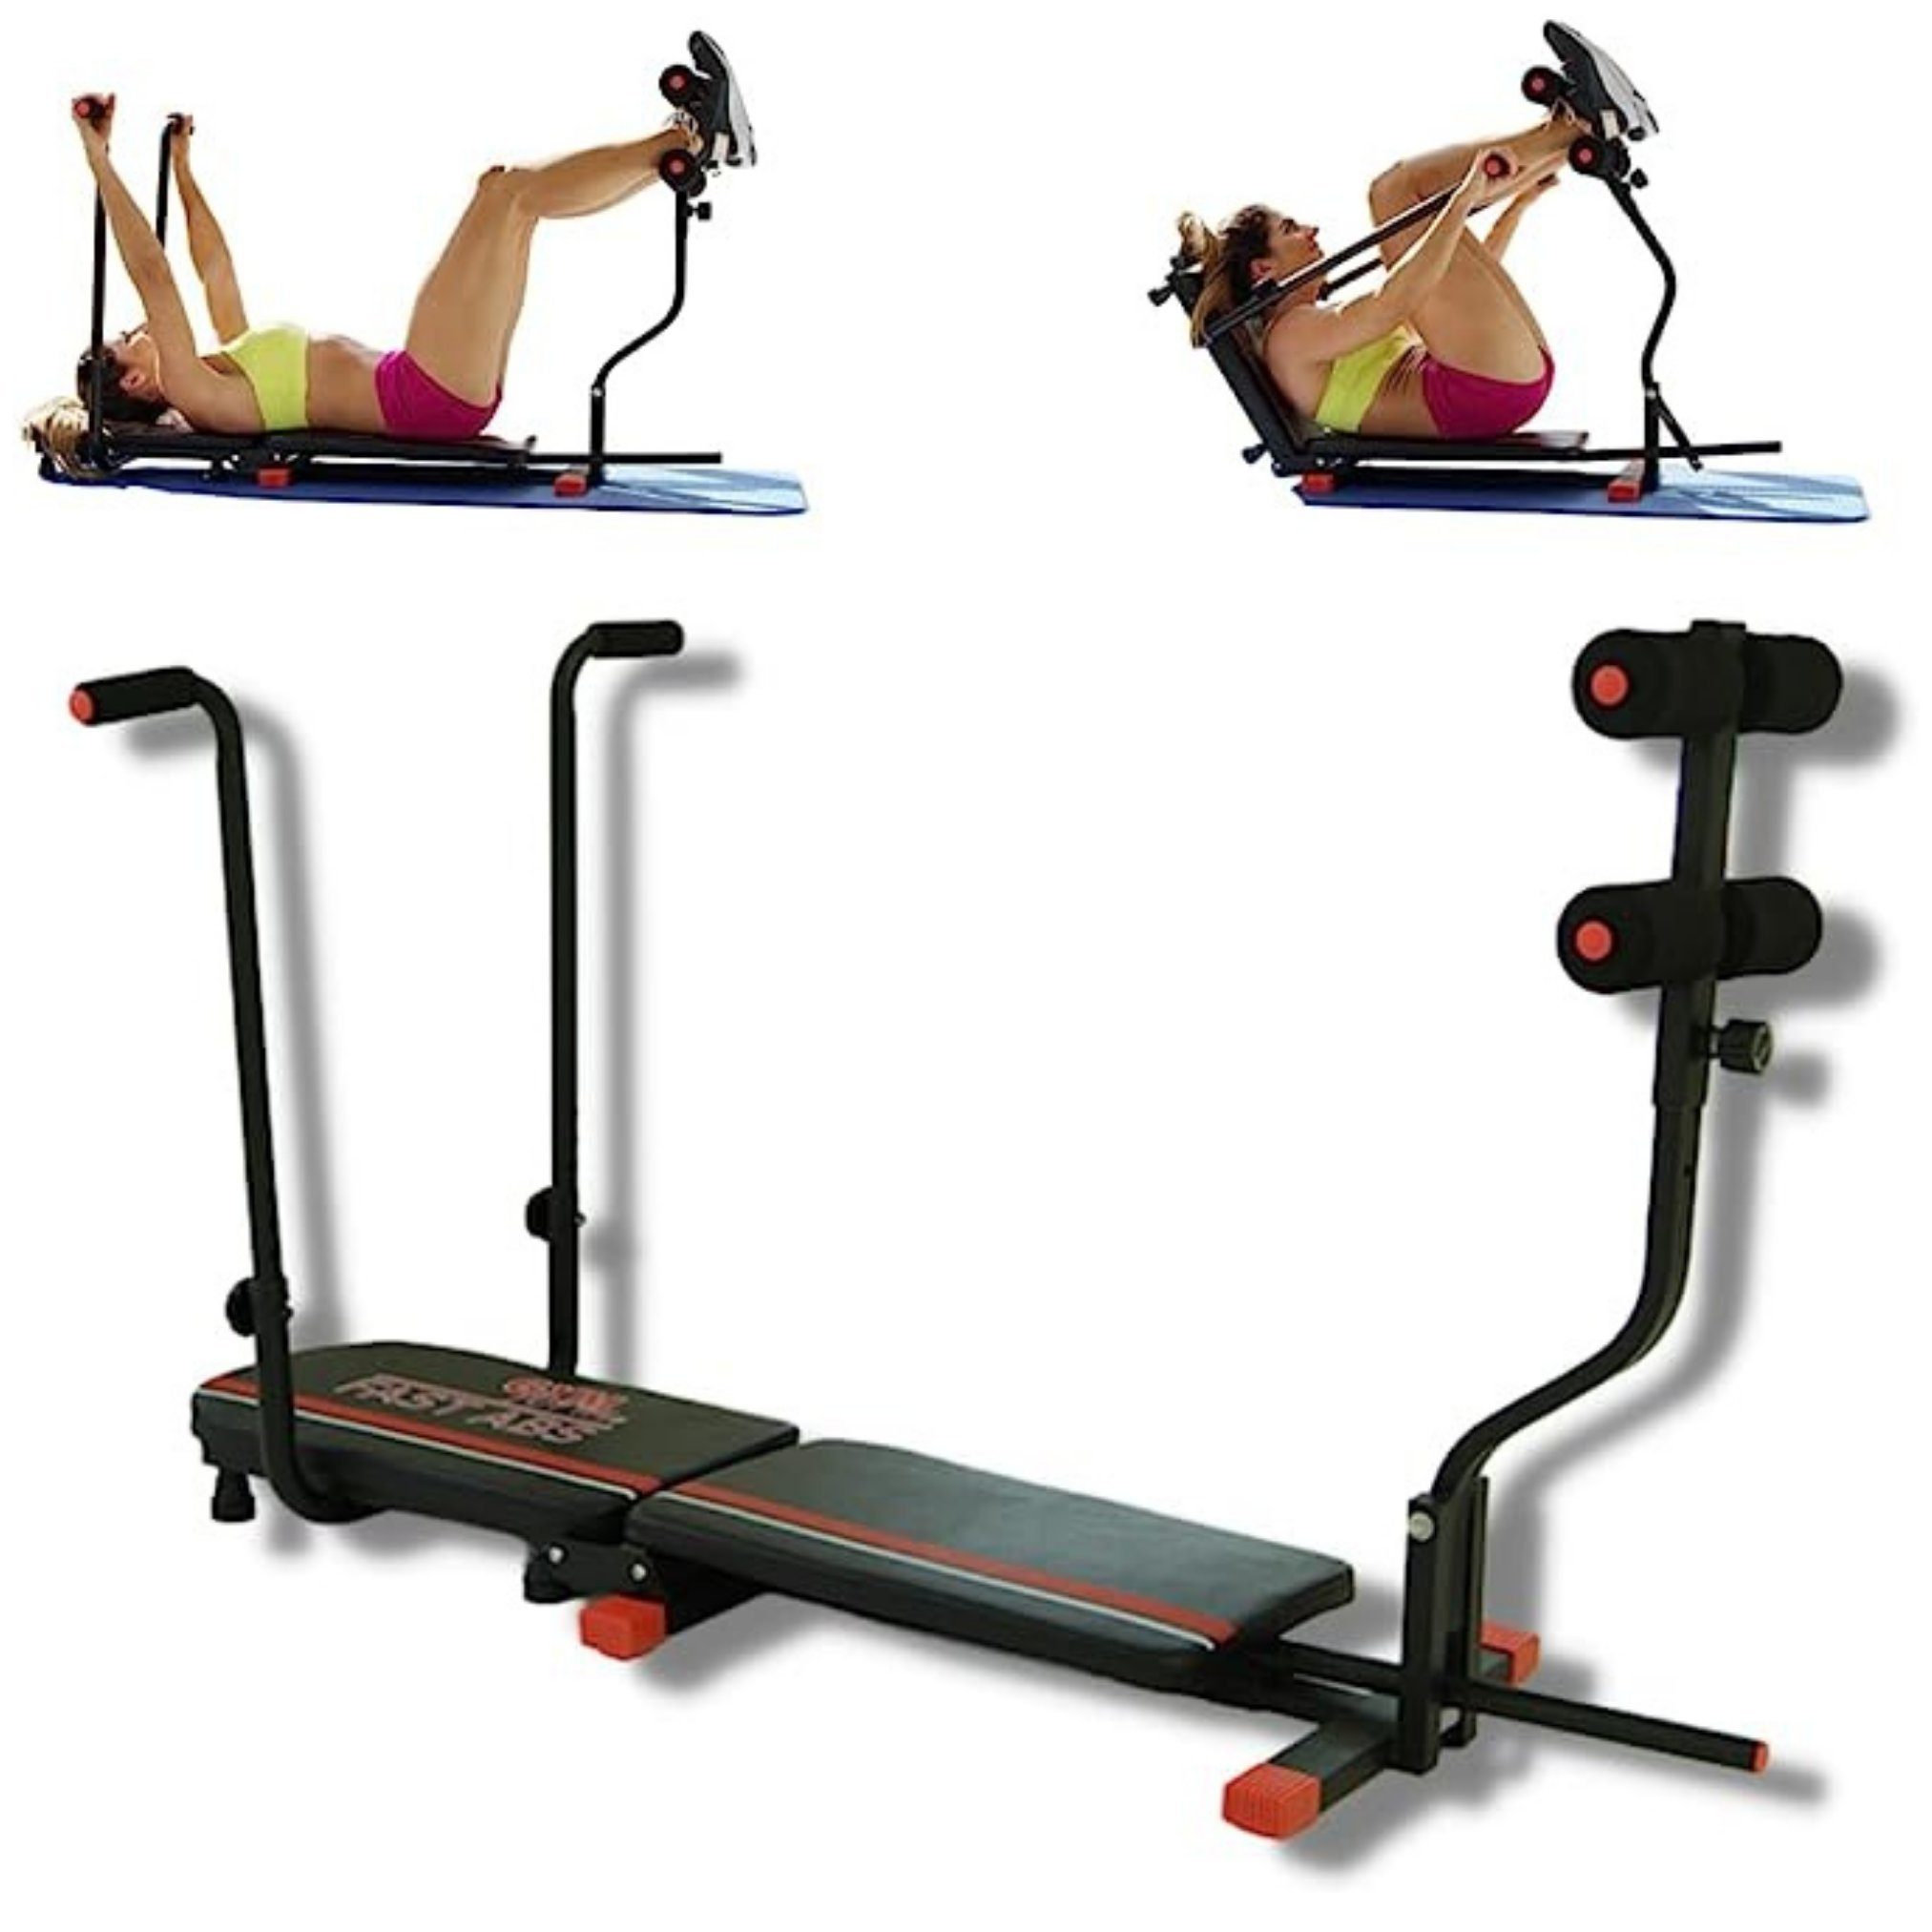 Gymform® Bauchtrainer Fast Abs Bauchmuskeltrainer, Bauchtrainer Zuhause, Fitnessgerät klappbar, Sit up Bank bis 120kg